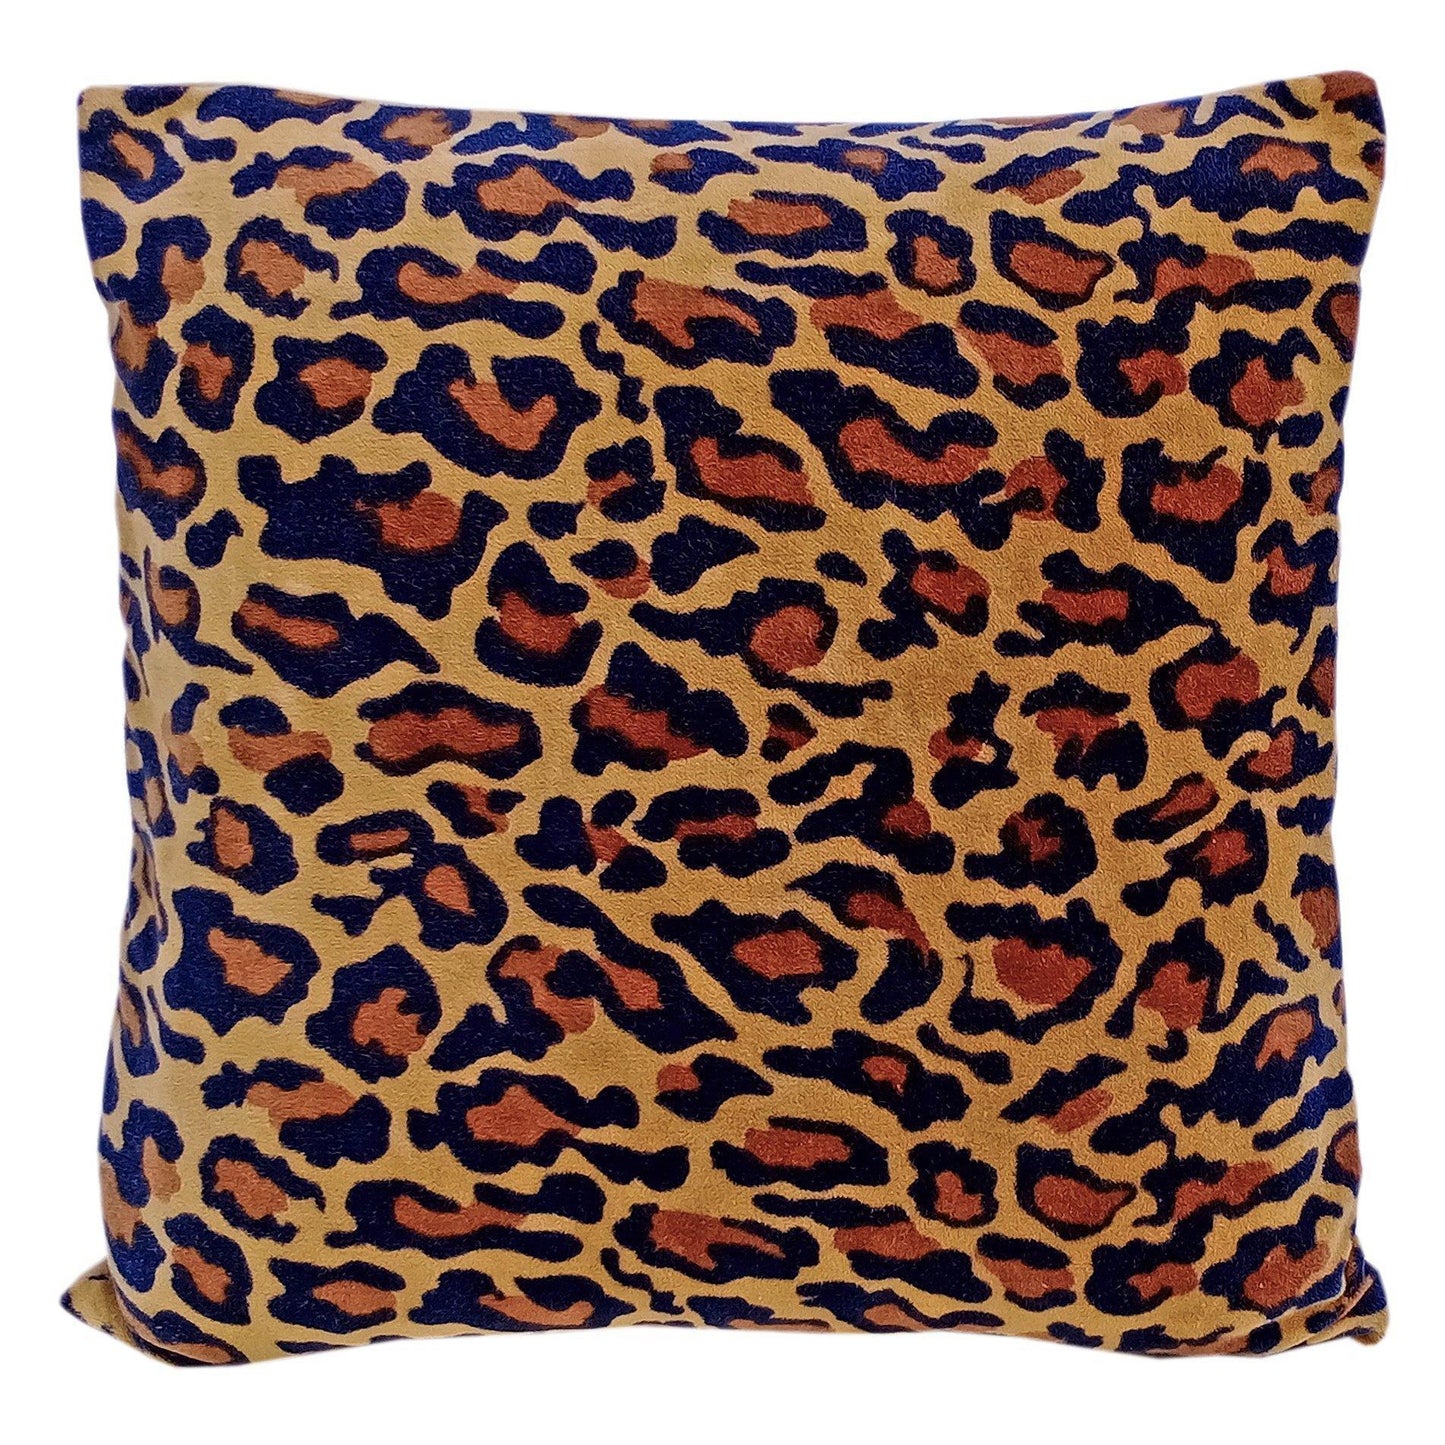 Leopard Print Velvet Cushion Cover - The Teal Thread